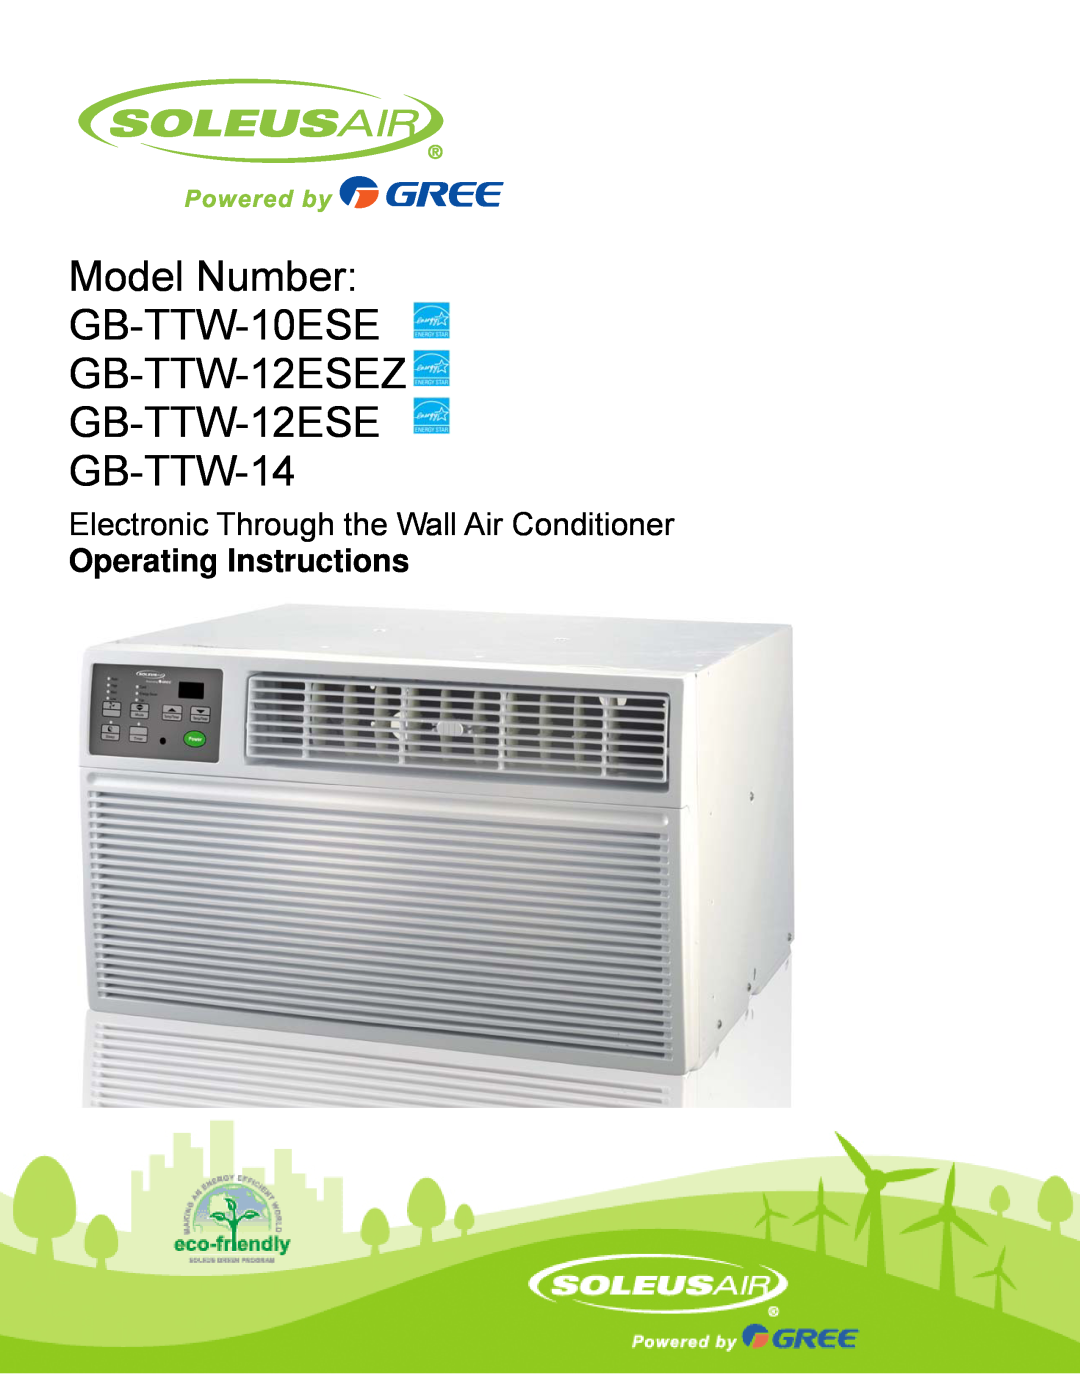 Soleus Air manual Model Number GB-TTW-10ESE GB-TTW-12ESEZ, GB-TTW-12ESE GB-TTW-14, Operating Instructions 